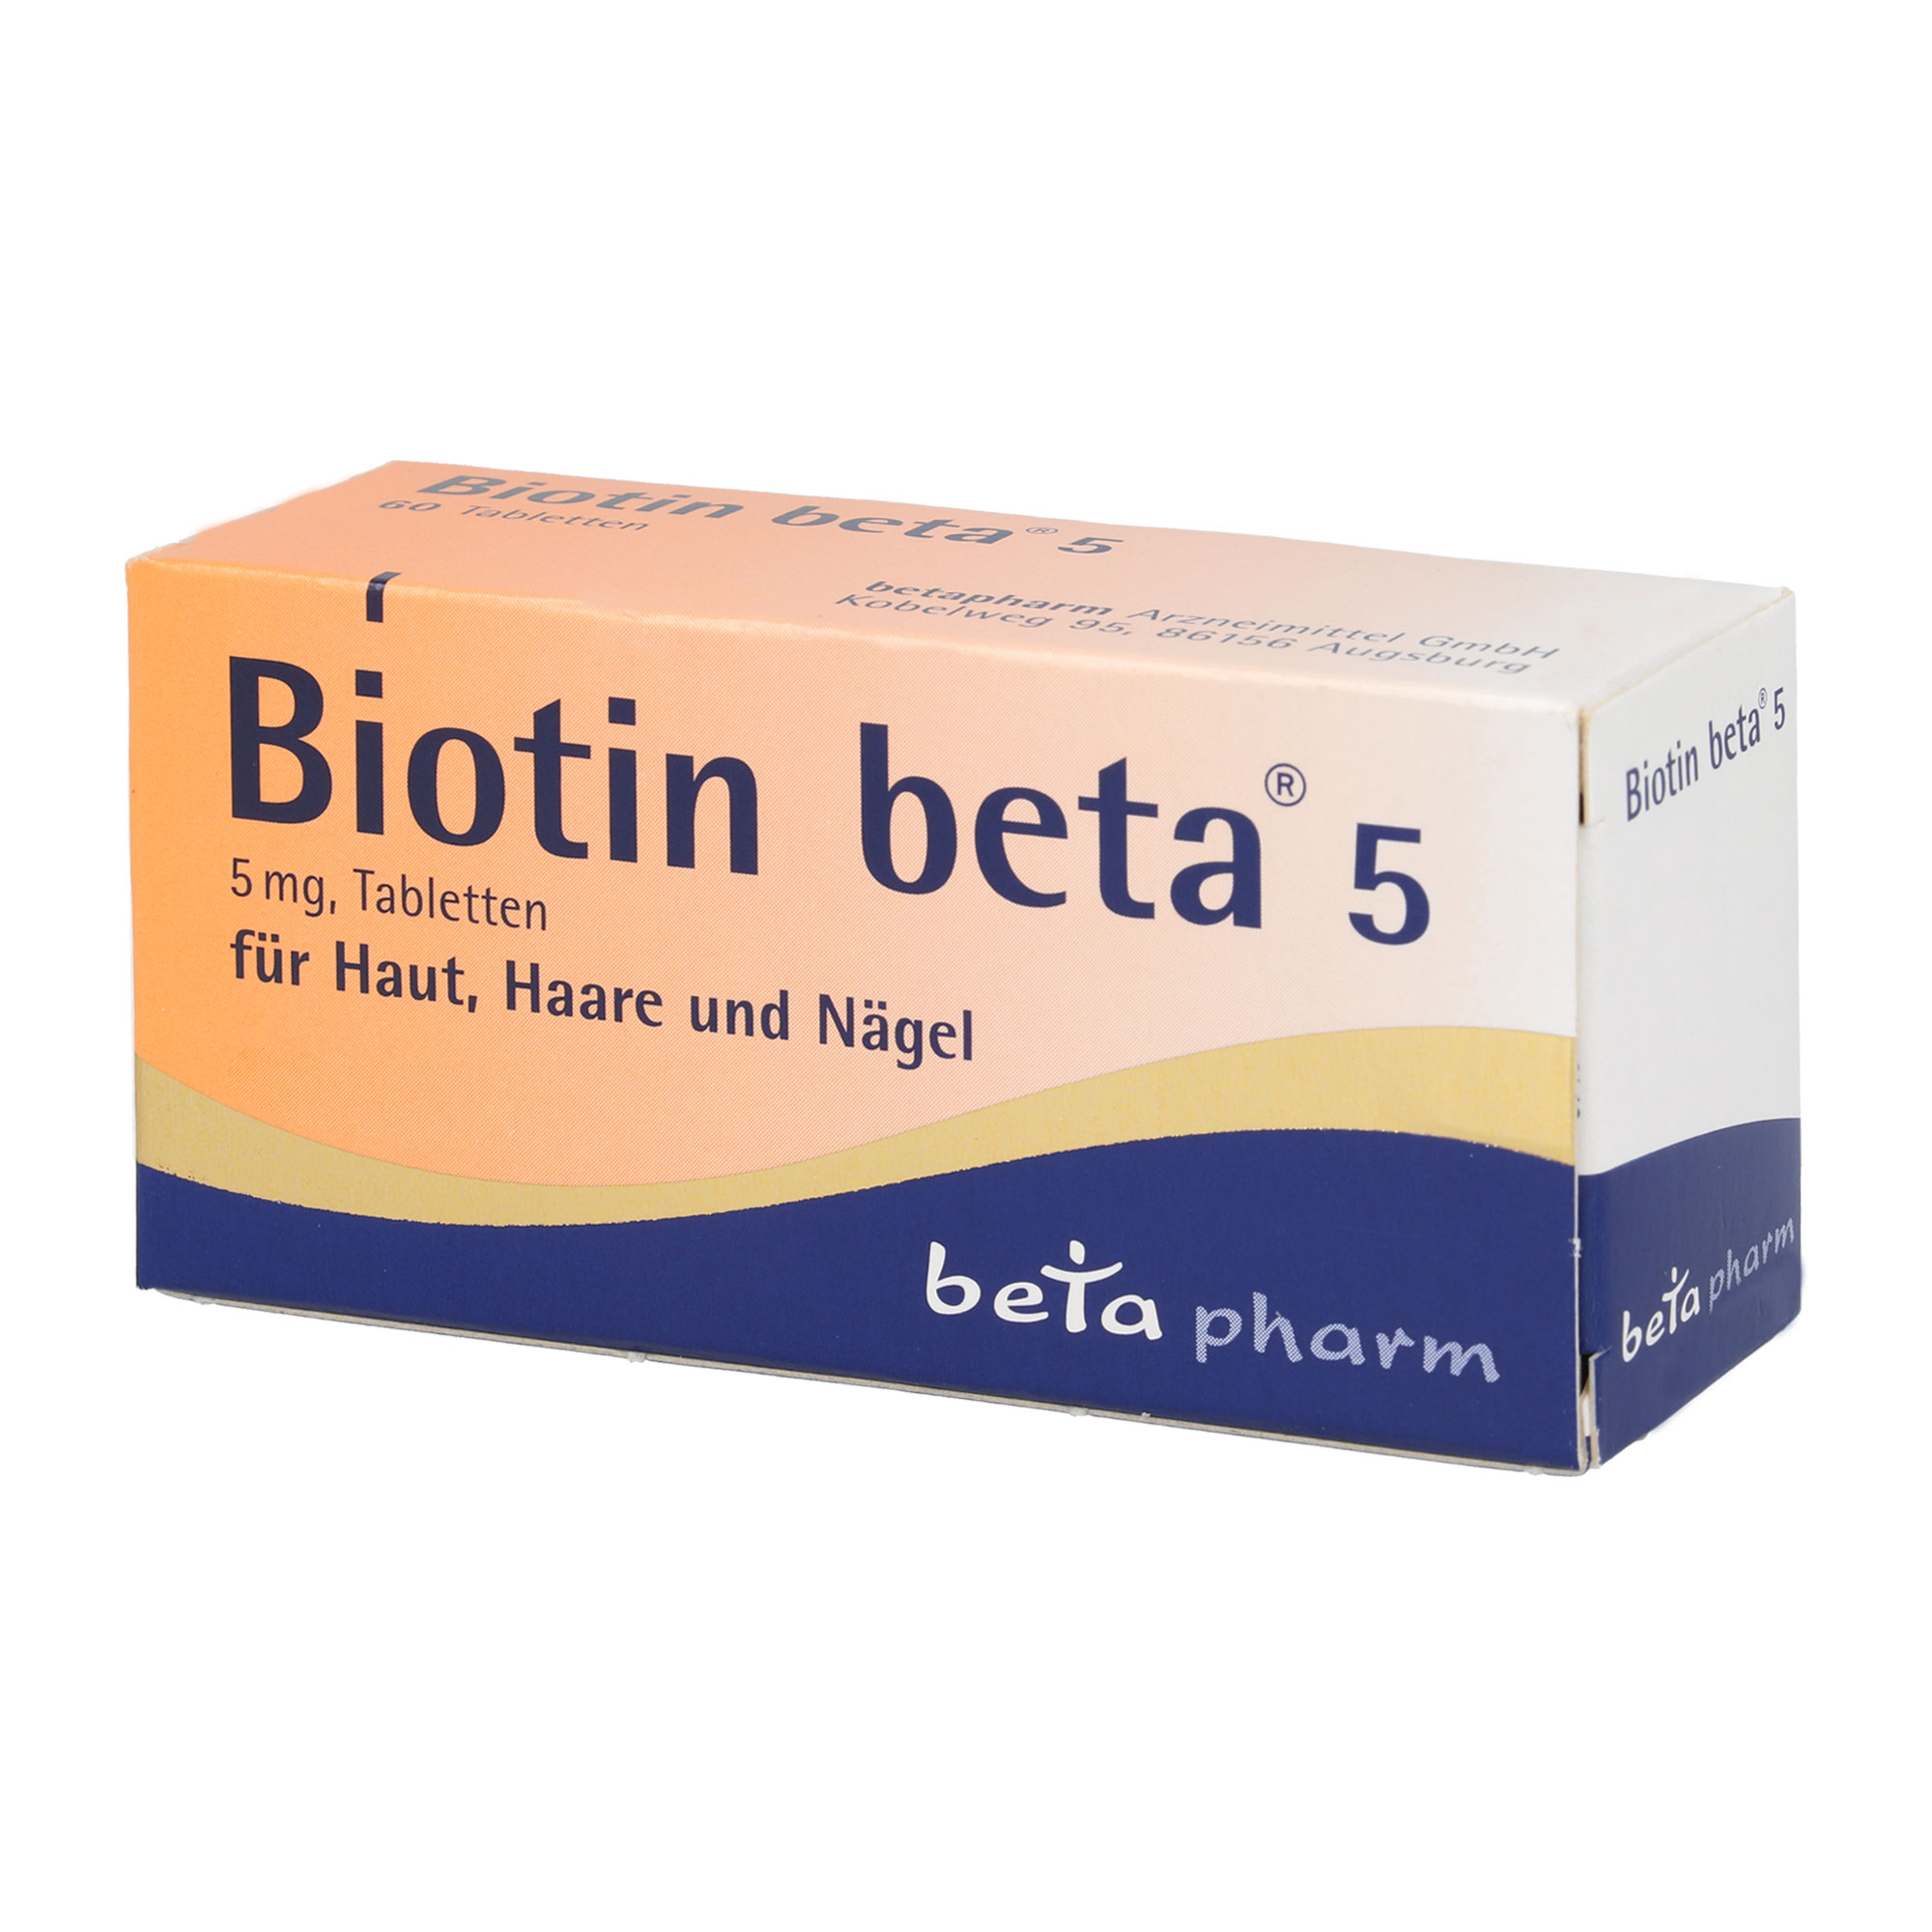 Vitaminpräparat zur Vorbeugung und Behandlung eines Biotinmangels.